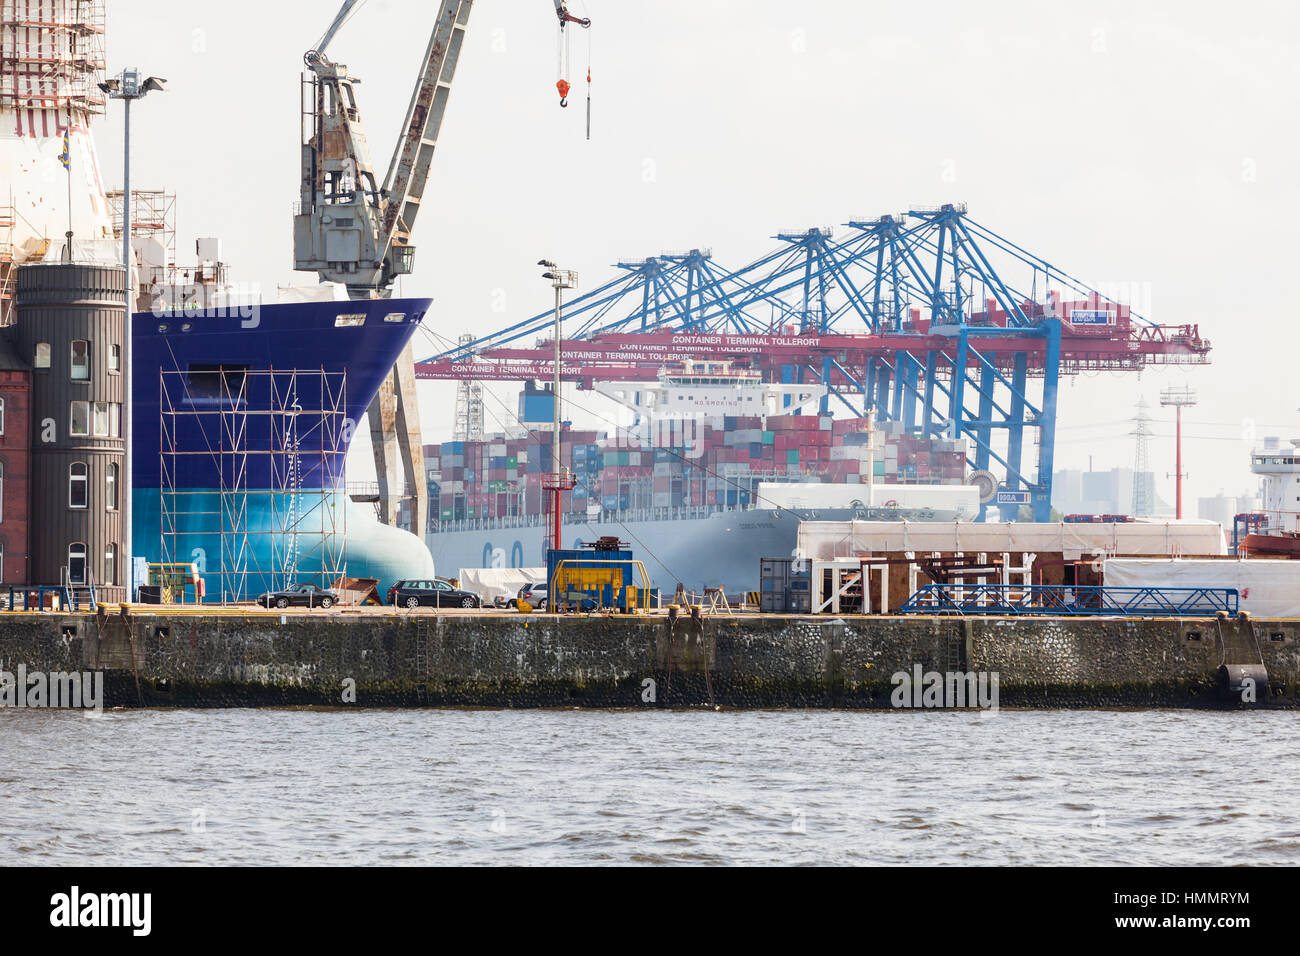 Hamburg, Deutschland - 5 Juli: Riesen Schiff im Containerhafen mit hohen Kräne im Hafen Hamburg, Deutschland am 5. Juli 2013 Stockfoto